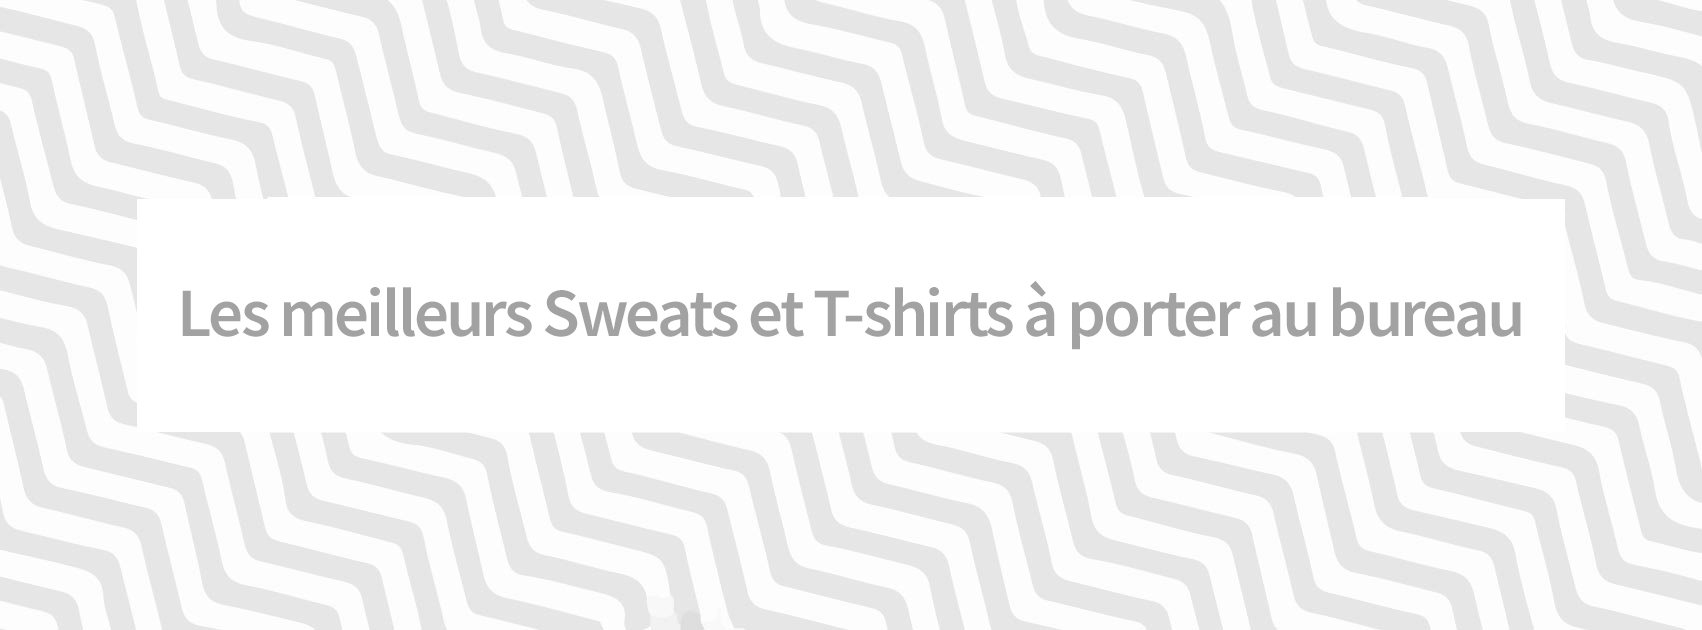 Les meilleurs Sweats et T-shirts à porter au bureau